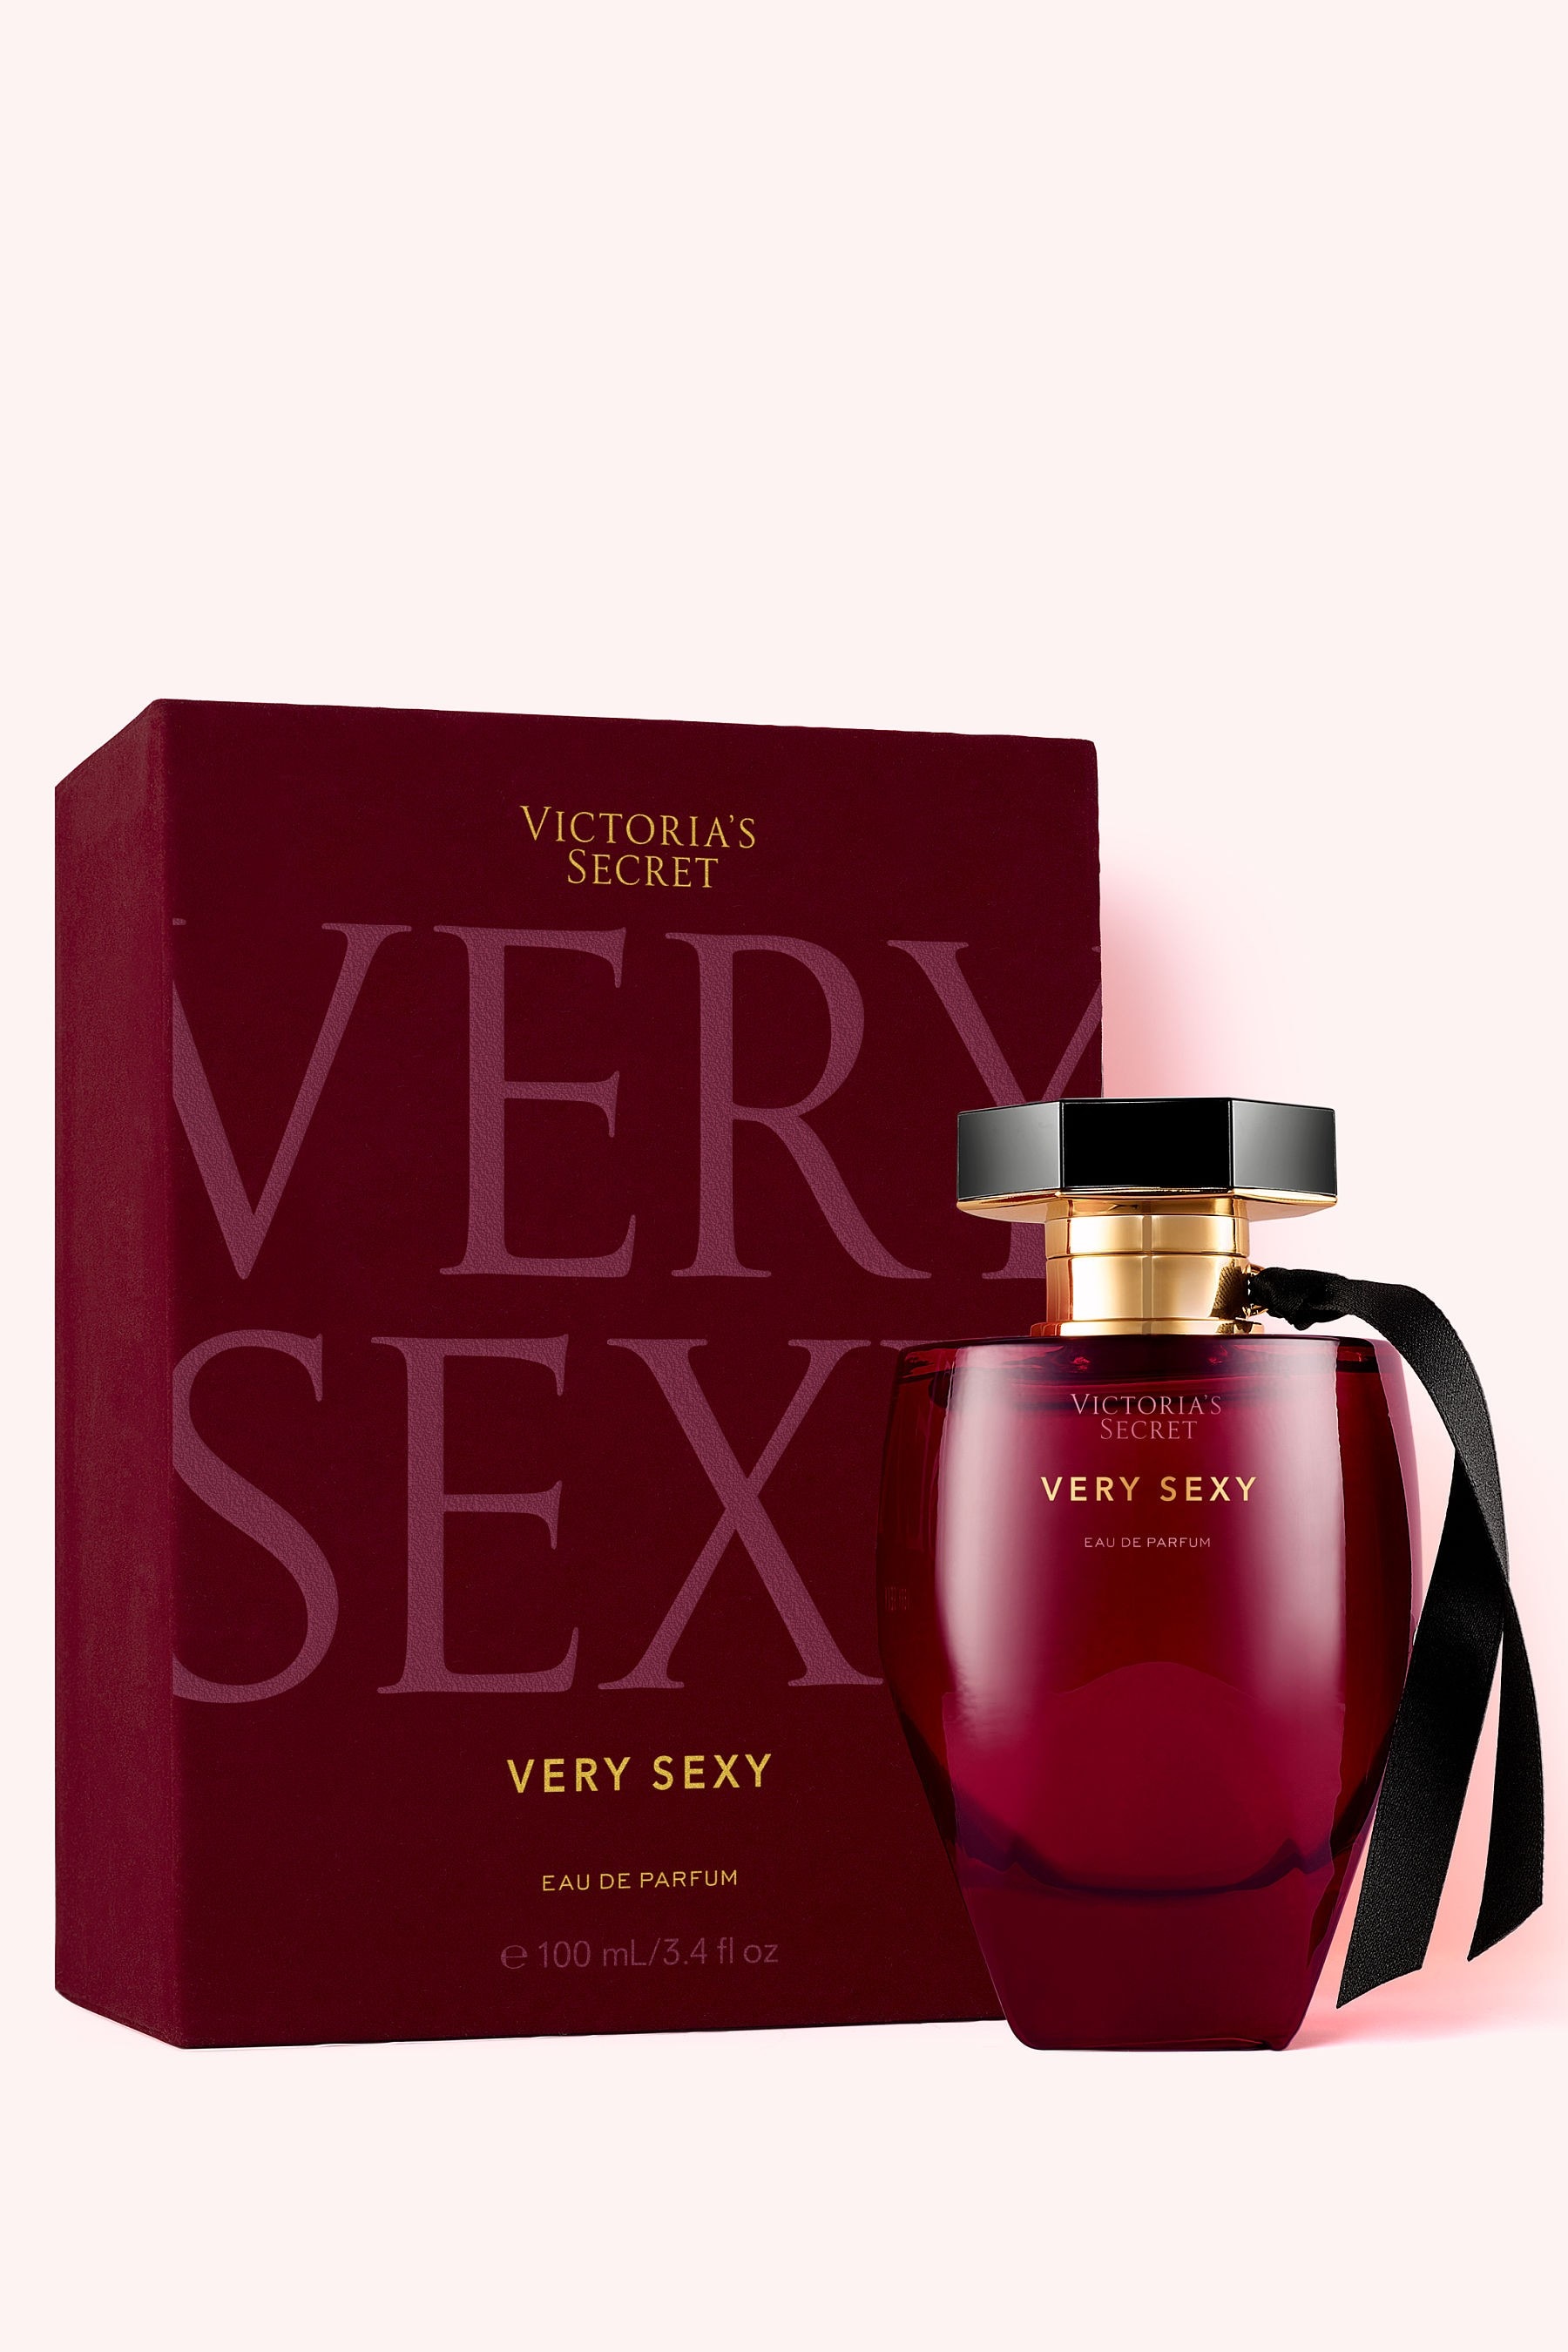 Buy Victorias Secret Very Sexy Eau De Parfum From The Victorias Secret Uk Online Shop 